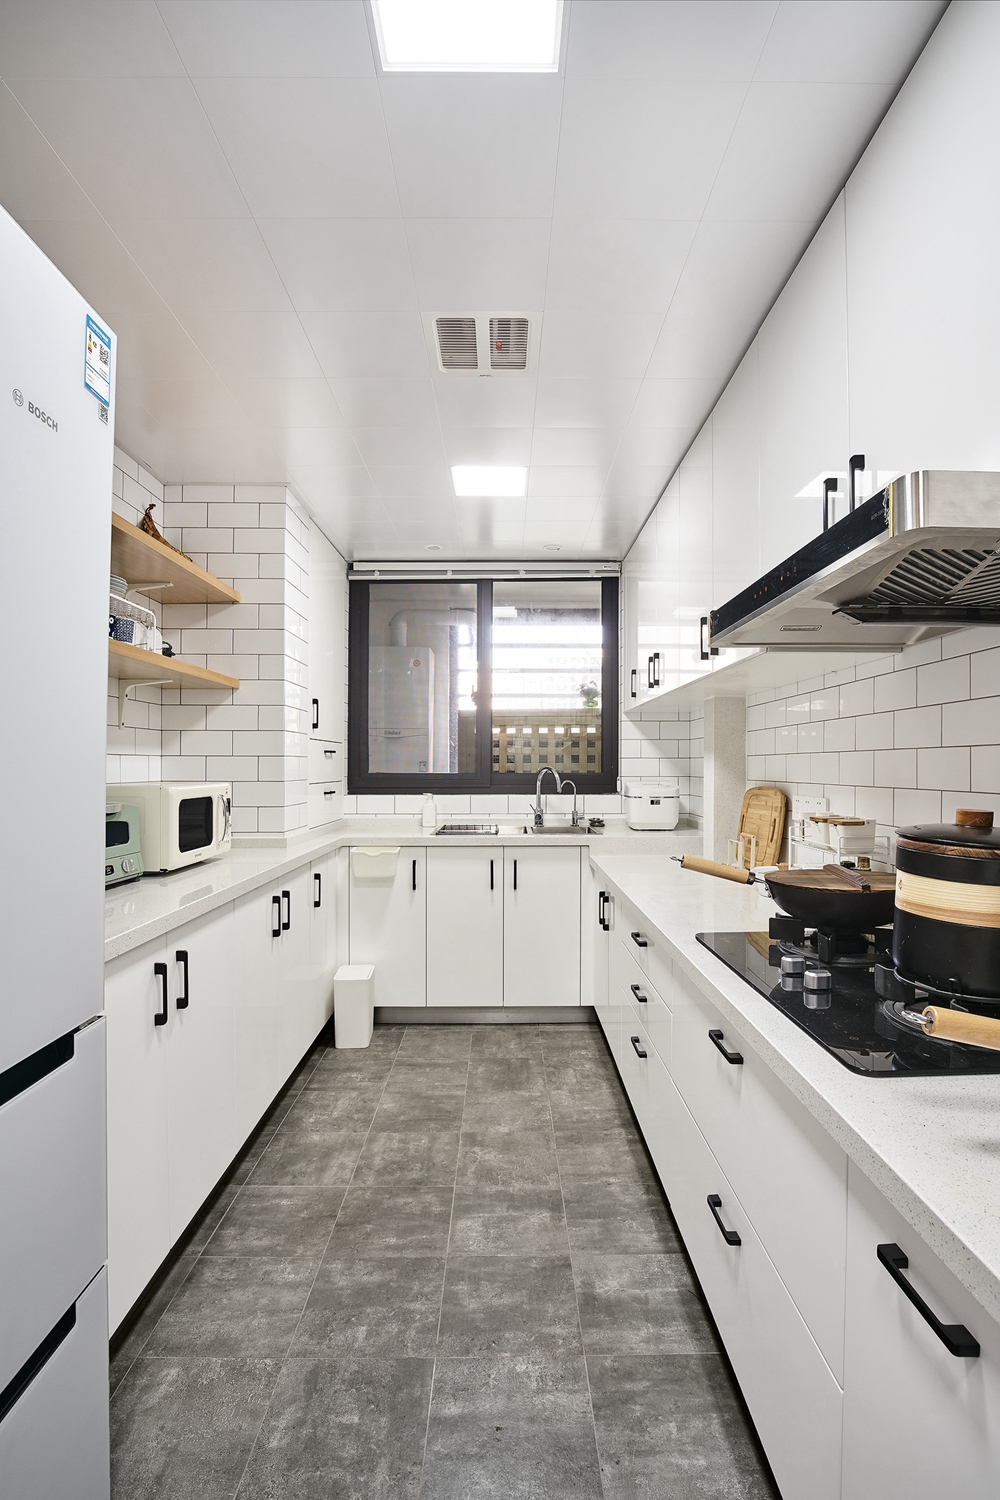 白色橱柜不失格调，彰显出优雅气质，营造出宁静淡雅的烹饪空间。